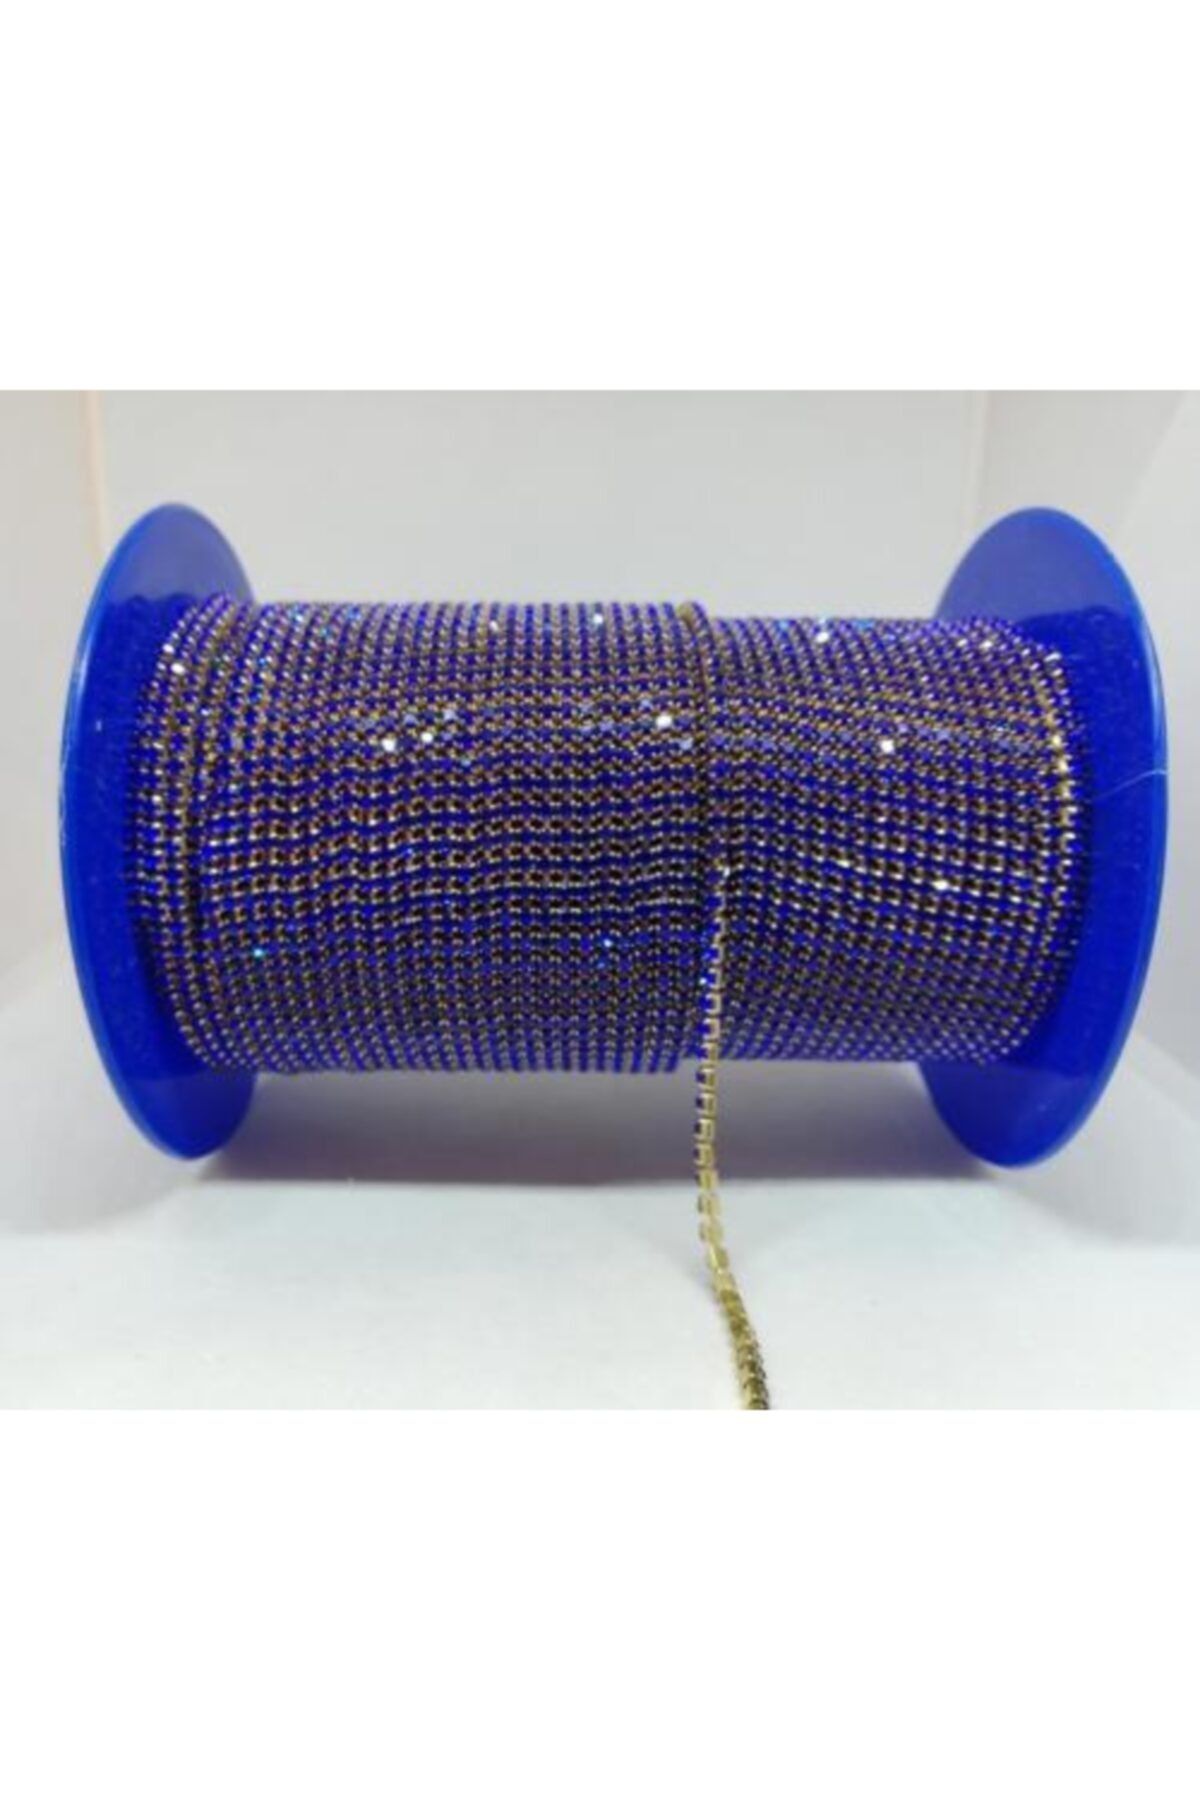 yiğit aksesuar Ss8(2mm) Kristal Sık Şerit Saks Mavisi(5 Metre)